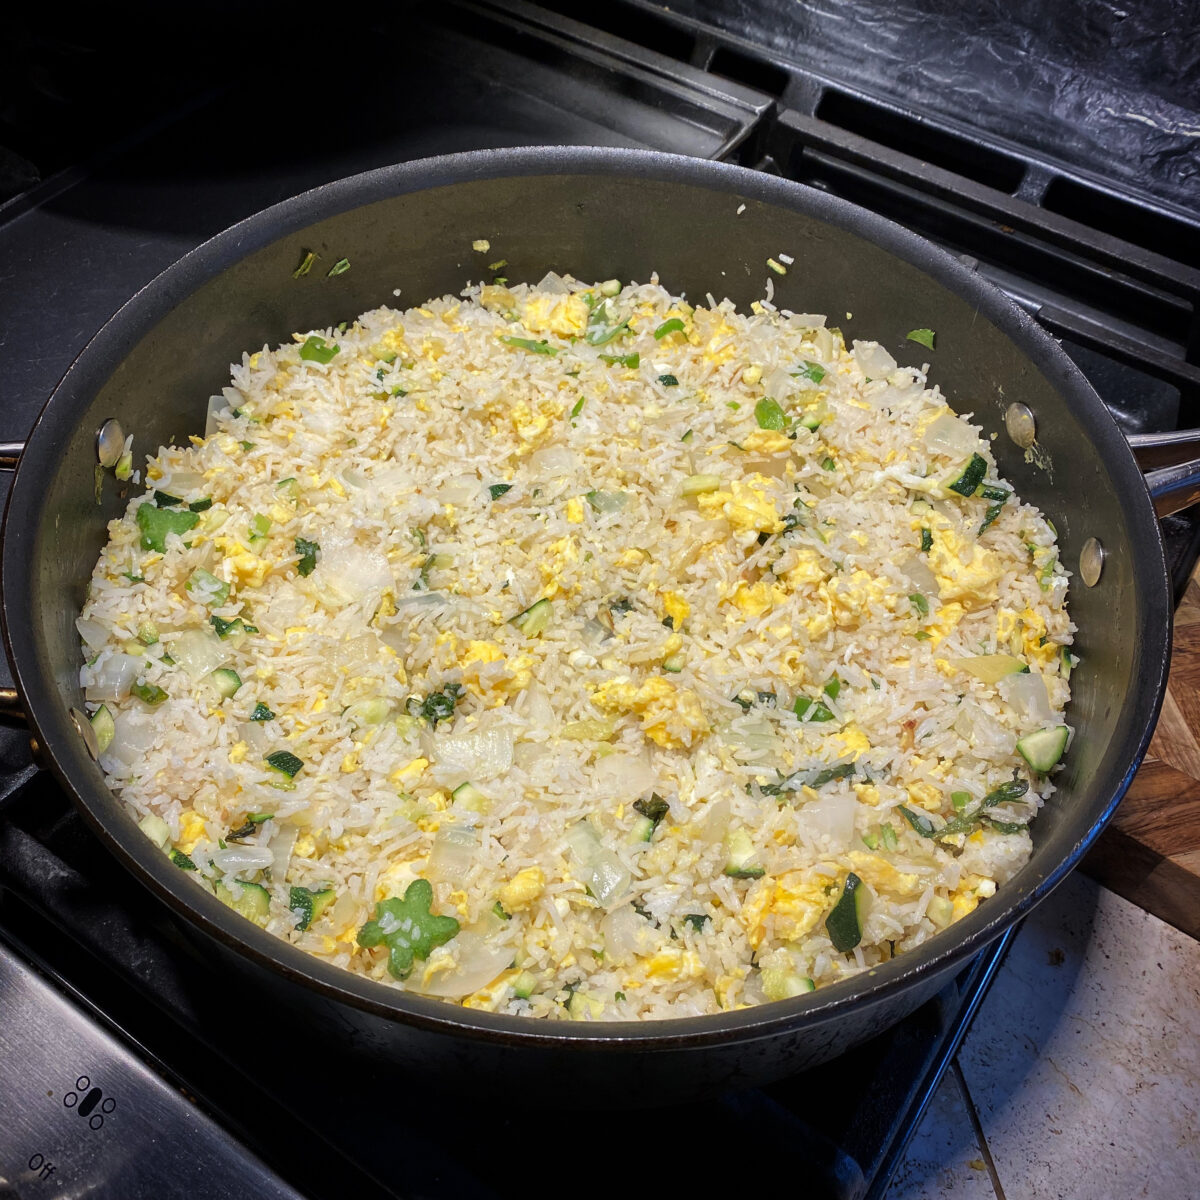 McThai's Veggie + Egg Fried Rice